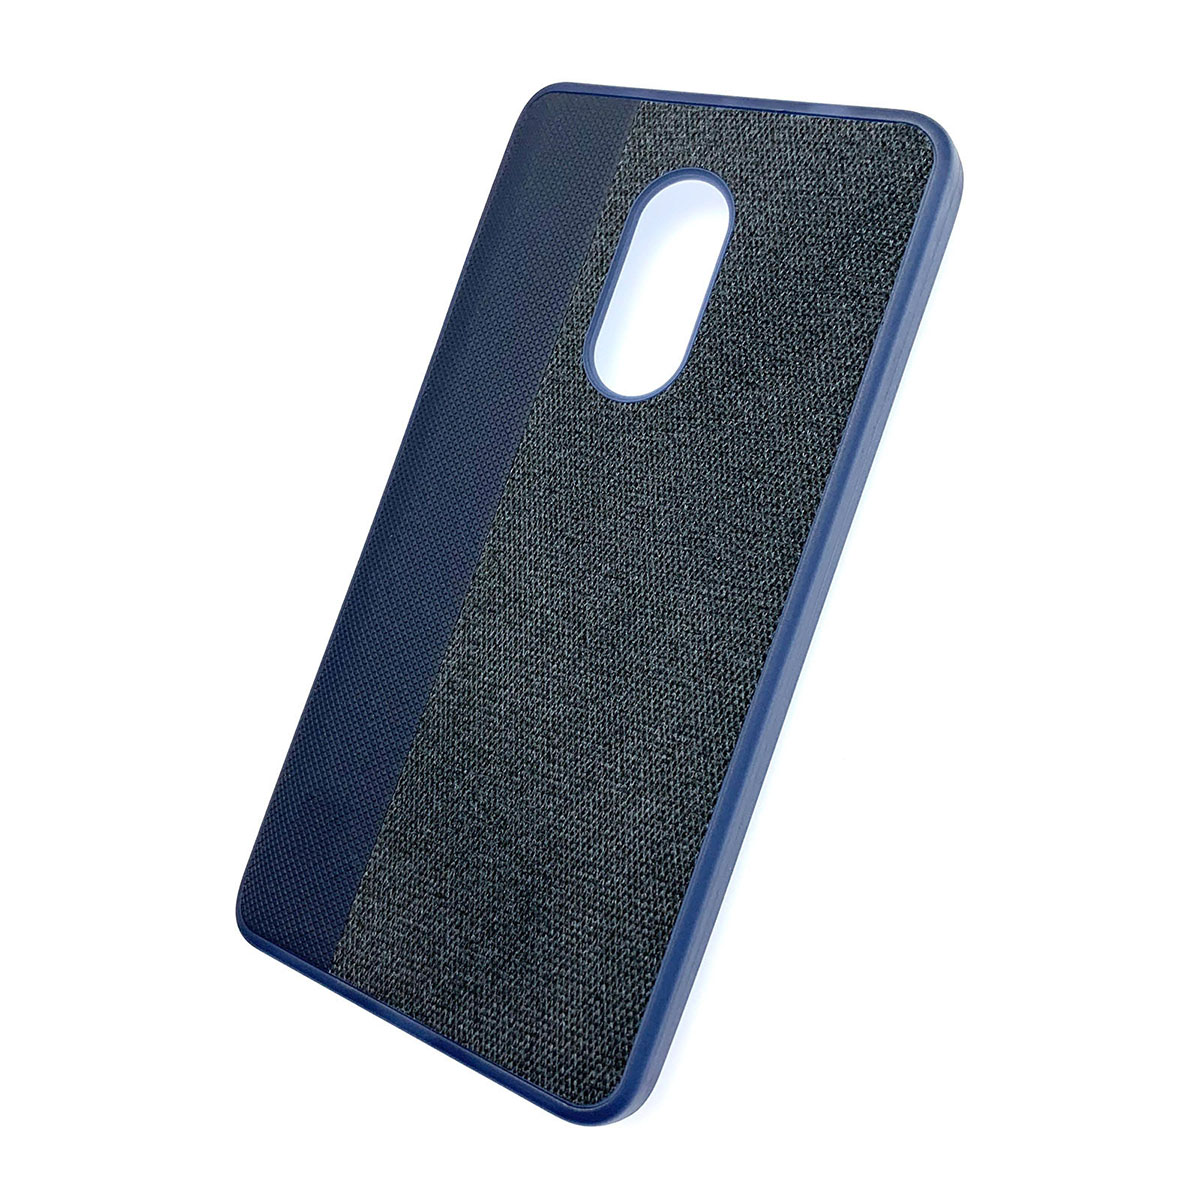 Чехол накладка для XIAOMI Redmi Note 4X, силикон, ткань, цвет синий.